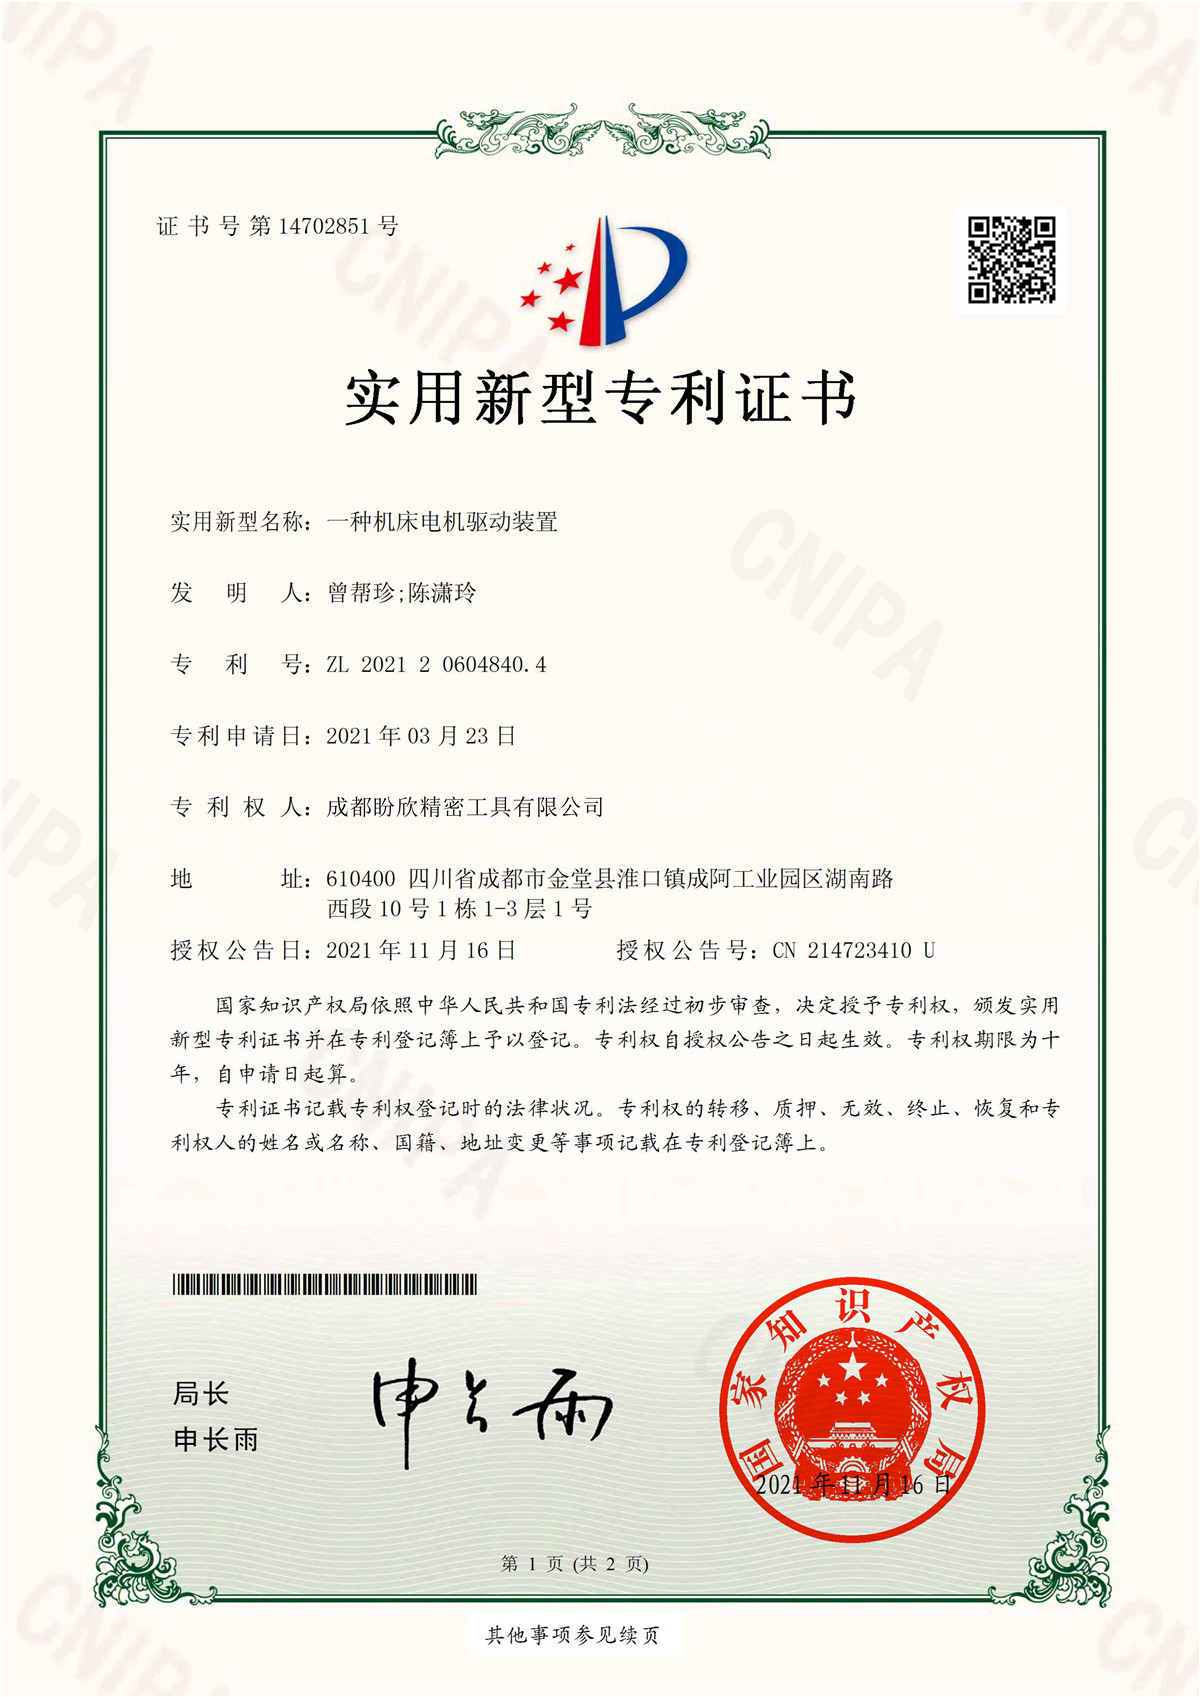 certificate05